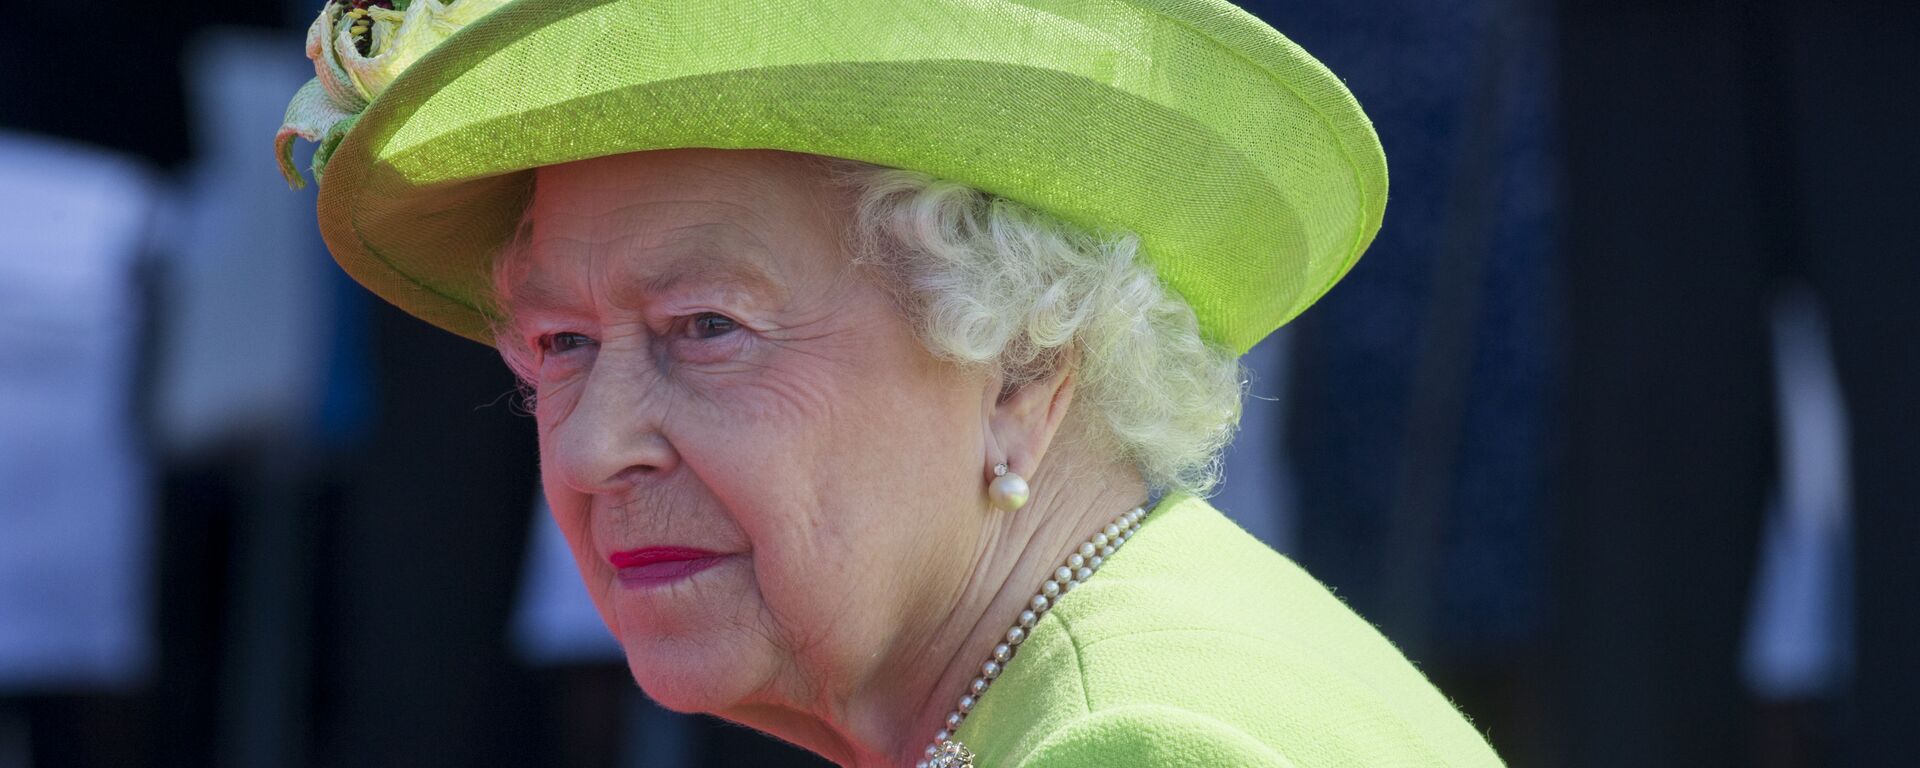 Isabel II, reina de Reino Unido - Sputnik Mundo, 1920, 07.03.2021